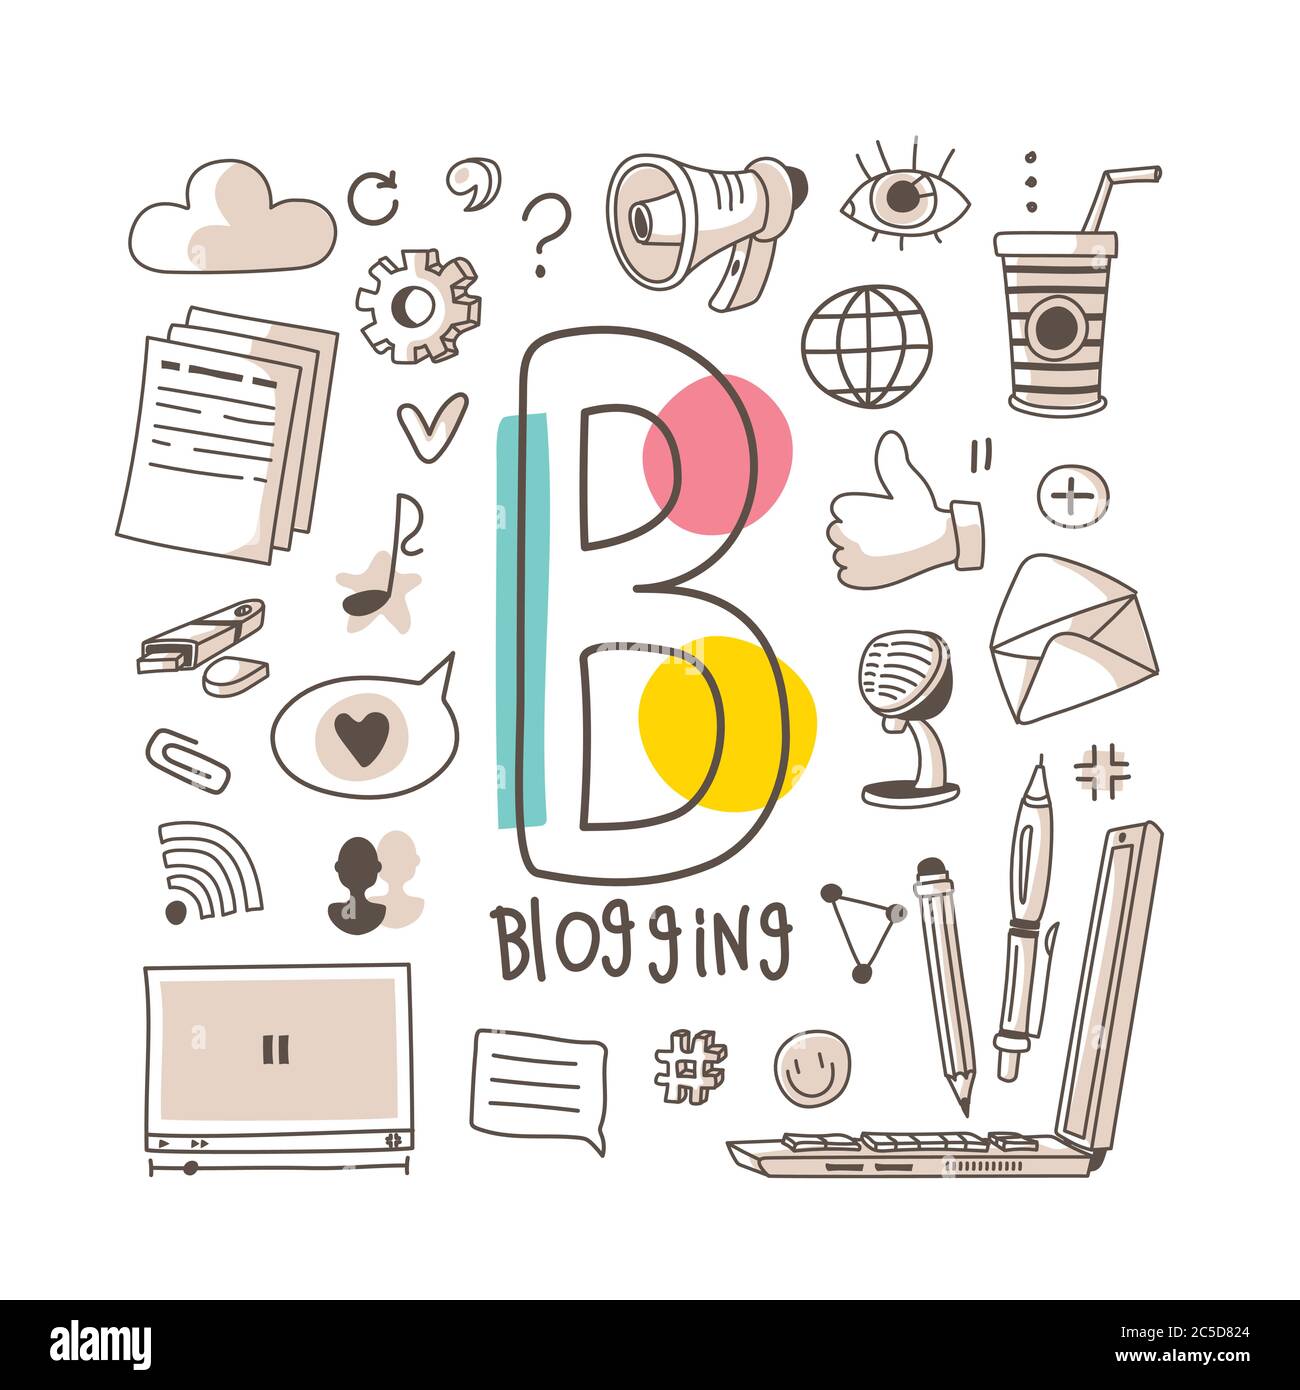 Buchstabe B - Blogging, nette Alphabet-Reihe im Doodle-Stil, Vektor-Abbildung Stock Vektor